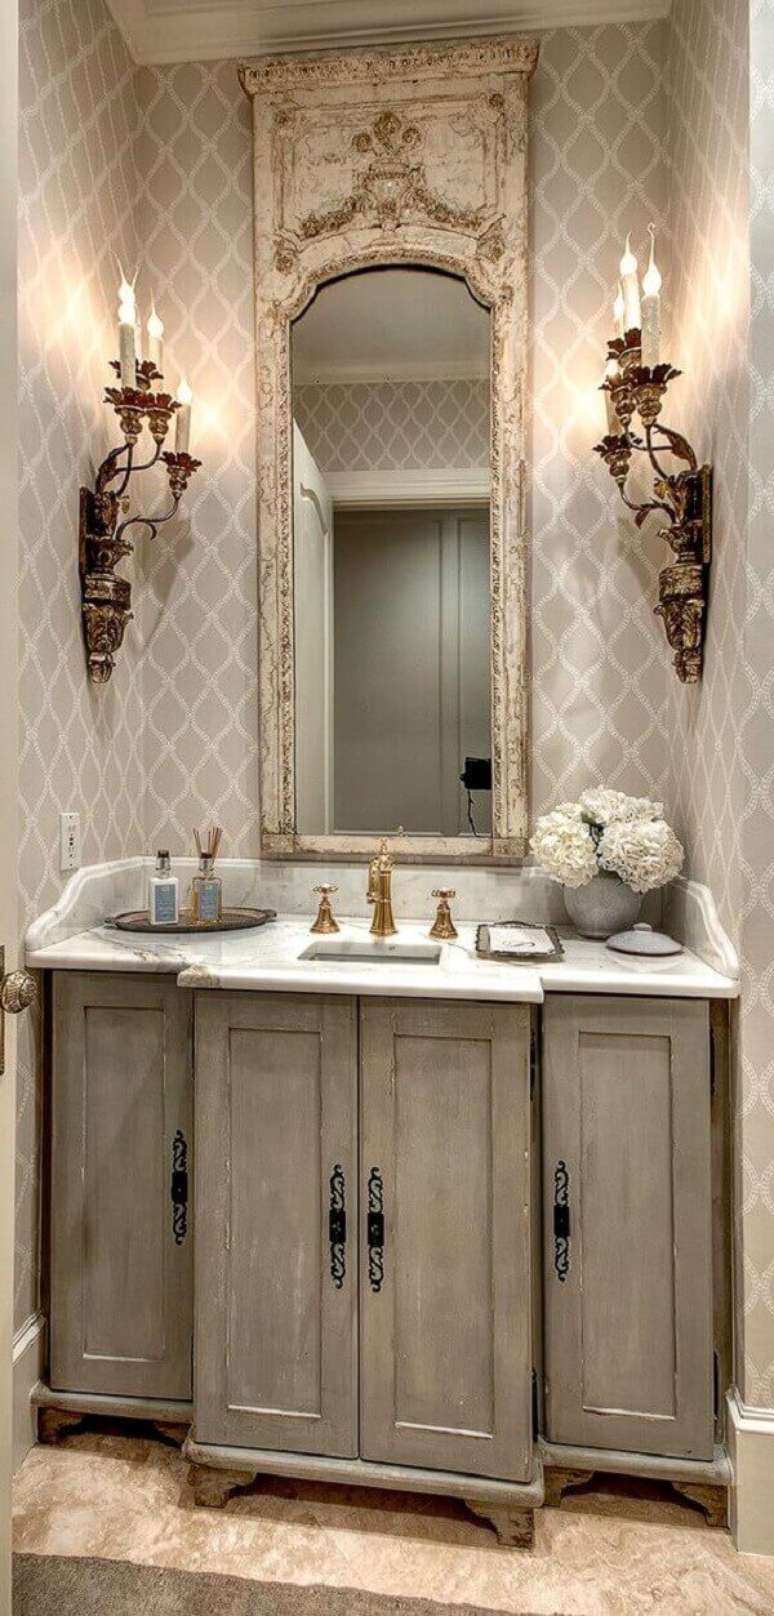 37- O papel de parede para lavabo em estilo provençal acompanha as luminárias, bancadas e espelho no mesmo estilo. Fonte: Blog Sincenet